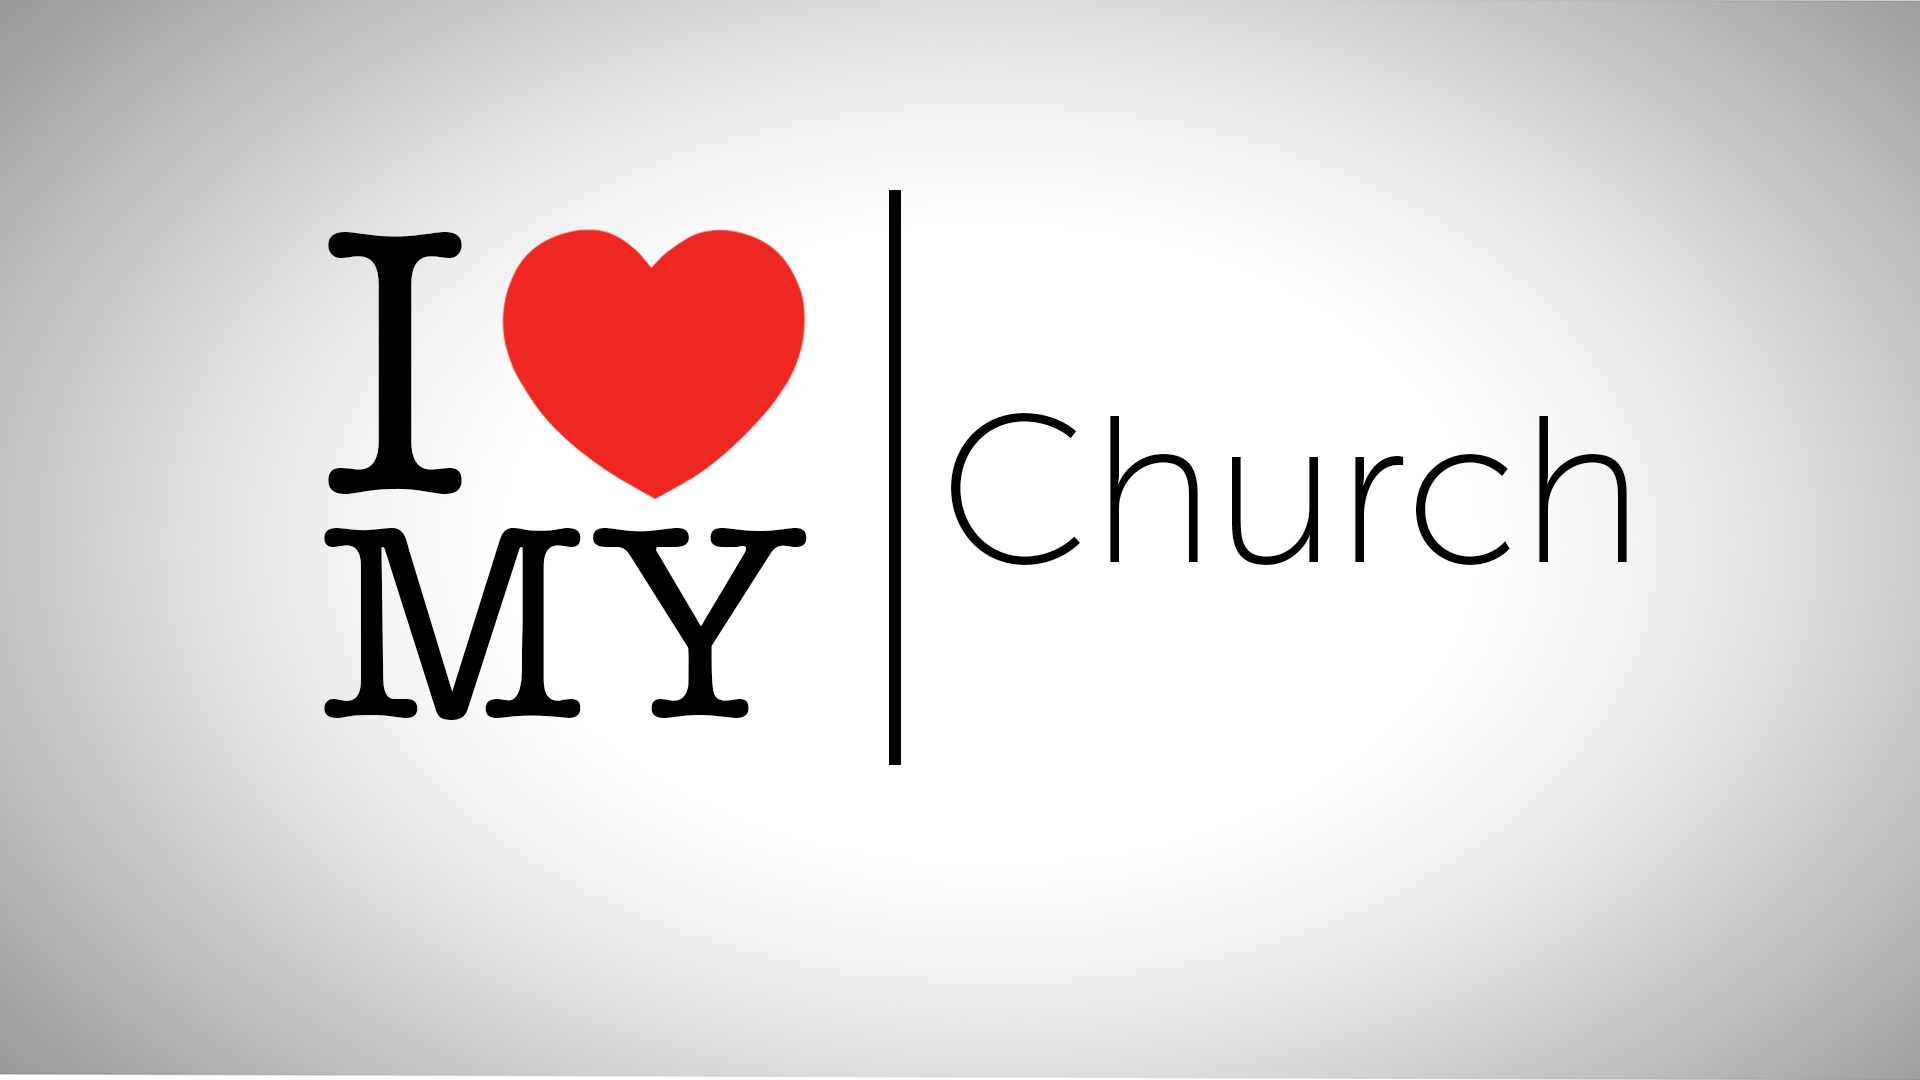 I love my church: I get faith